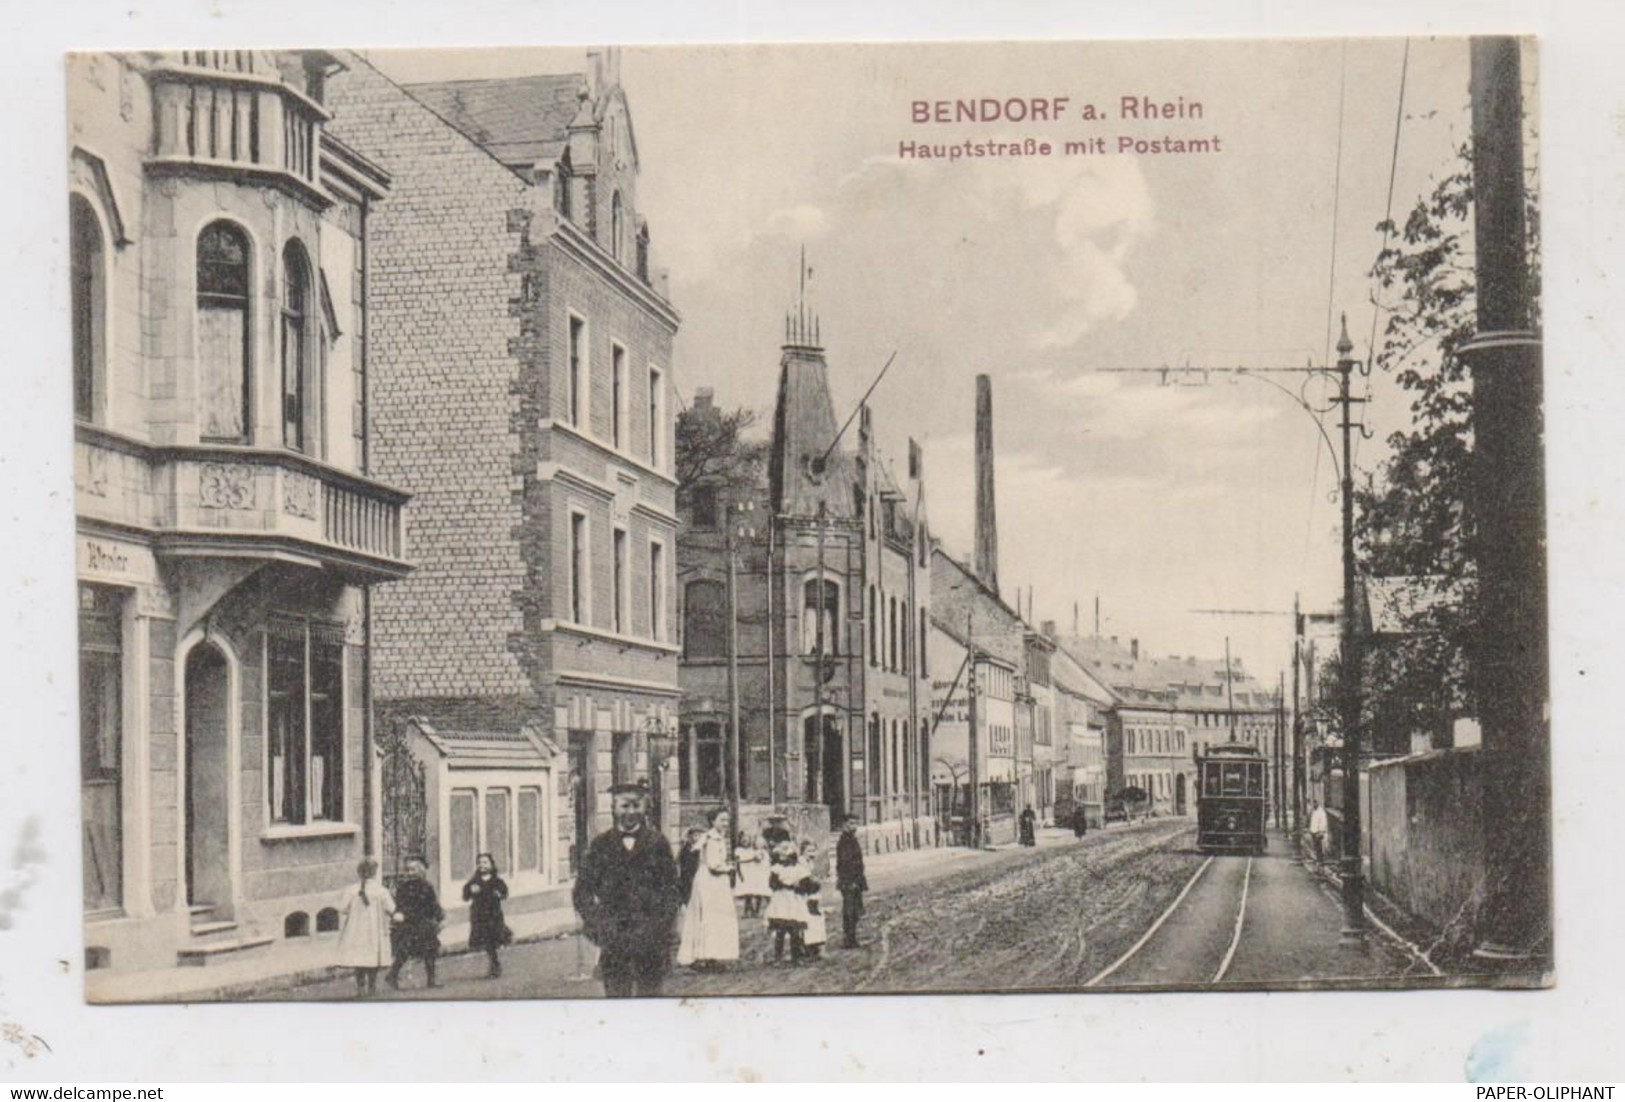 5413 BENDORF, Hauptstrasse, Postamt, Strassenbahn, Belebte Szene, Kl. Druckstelle, 1913 - Bendorf